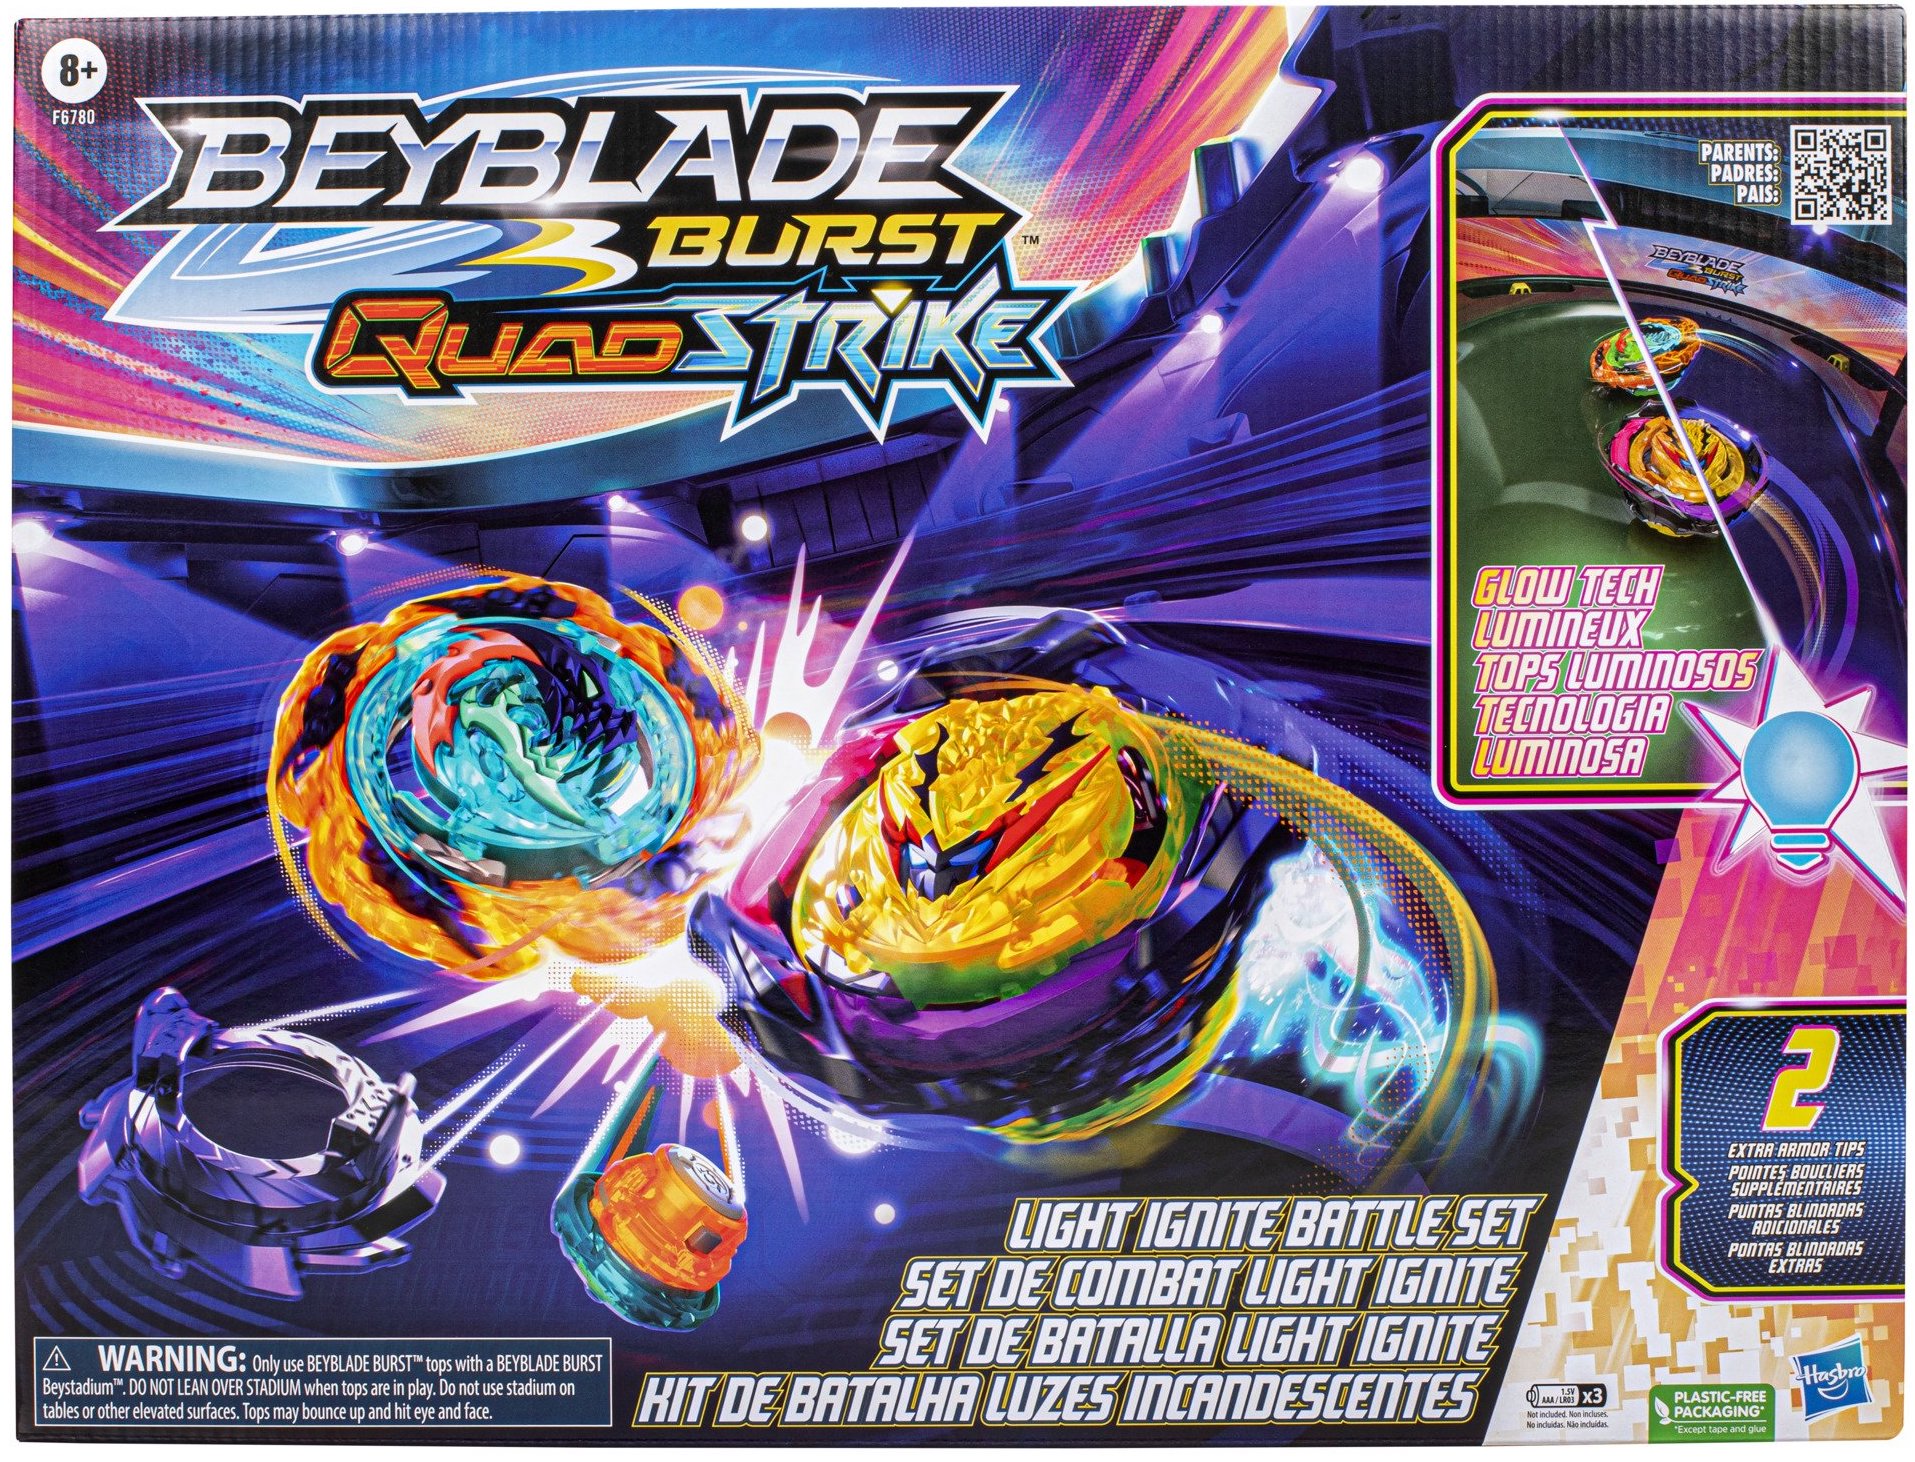 Beyblade Burst QuadStrike, Beyblade Wiki